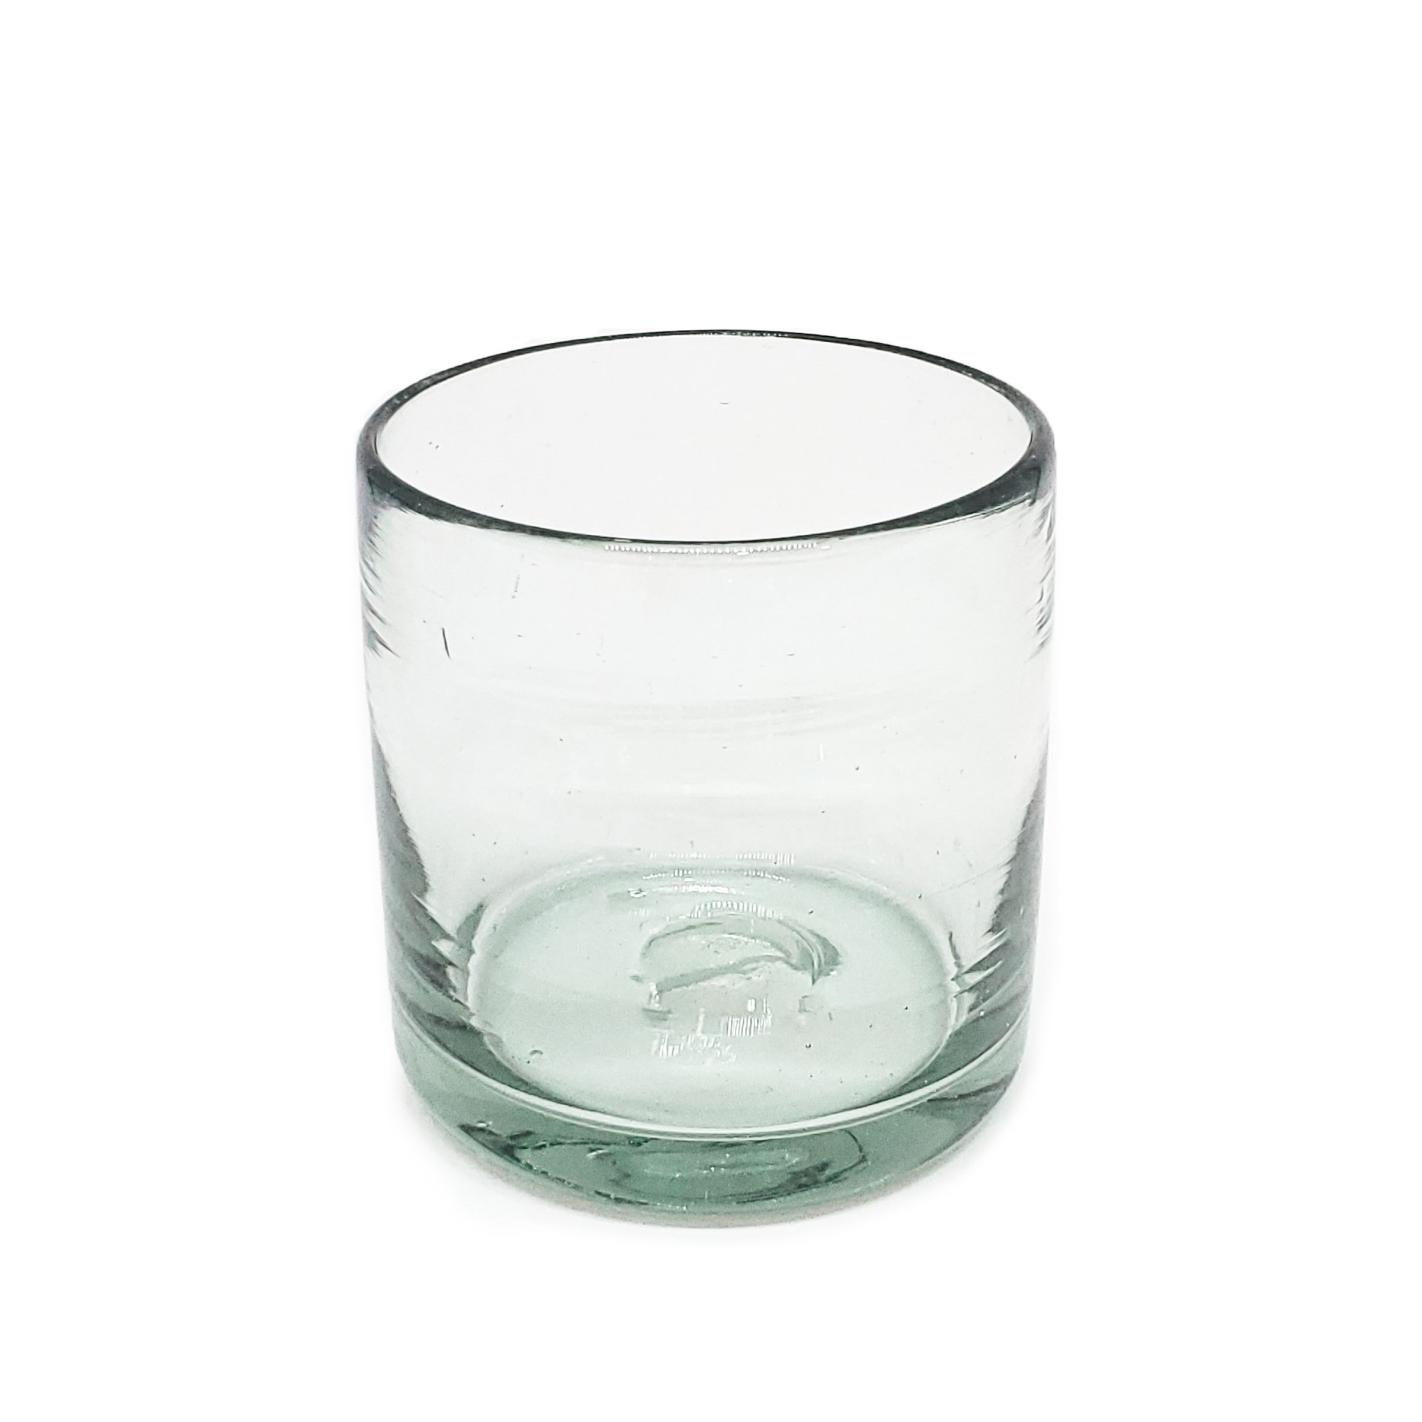 Novedades / Juego de 6 vasos DOF 8oz Transparentes, 8 oz, Vidrio Reciclado, Libre de Plomo y Toxinas / stos artesanales vasos le darn un toque clsico a su bebida favorita.